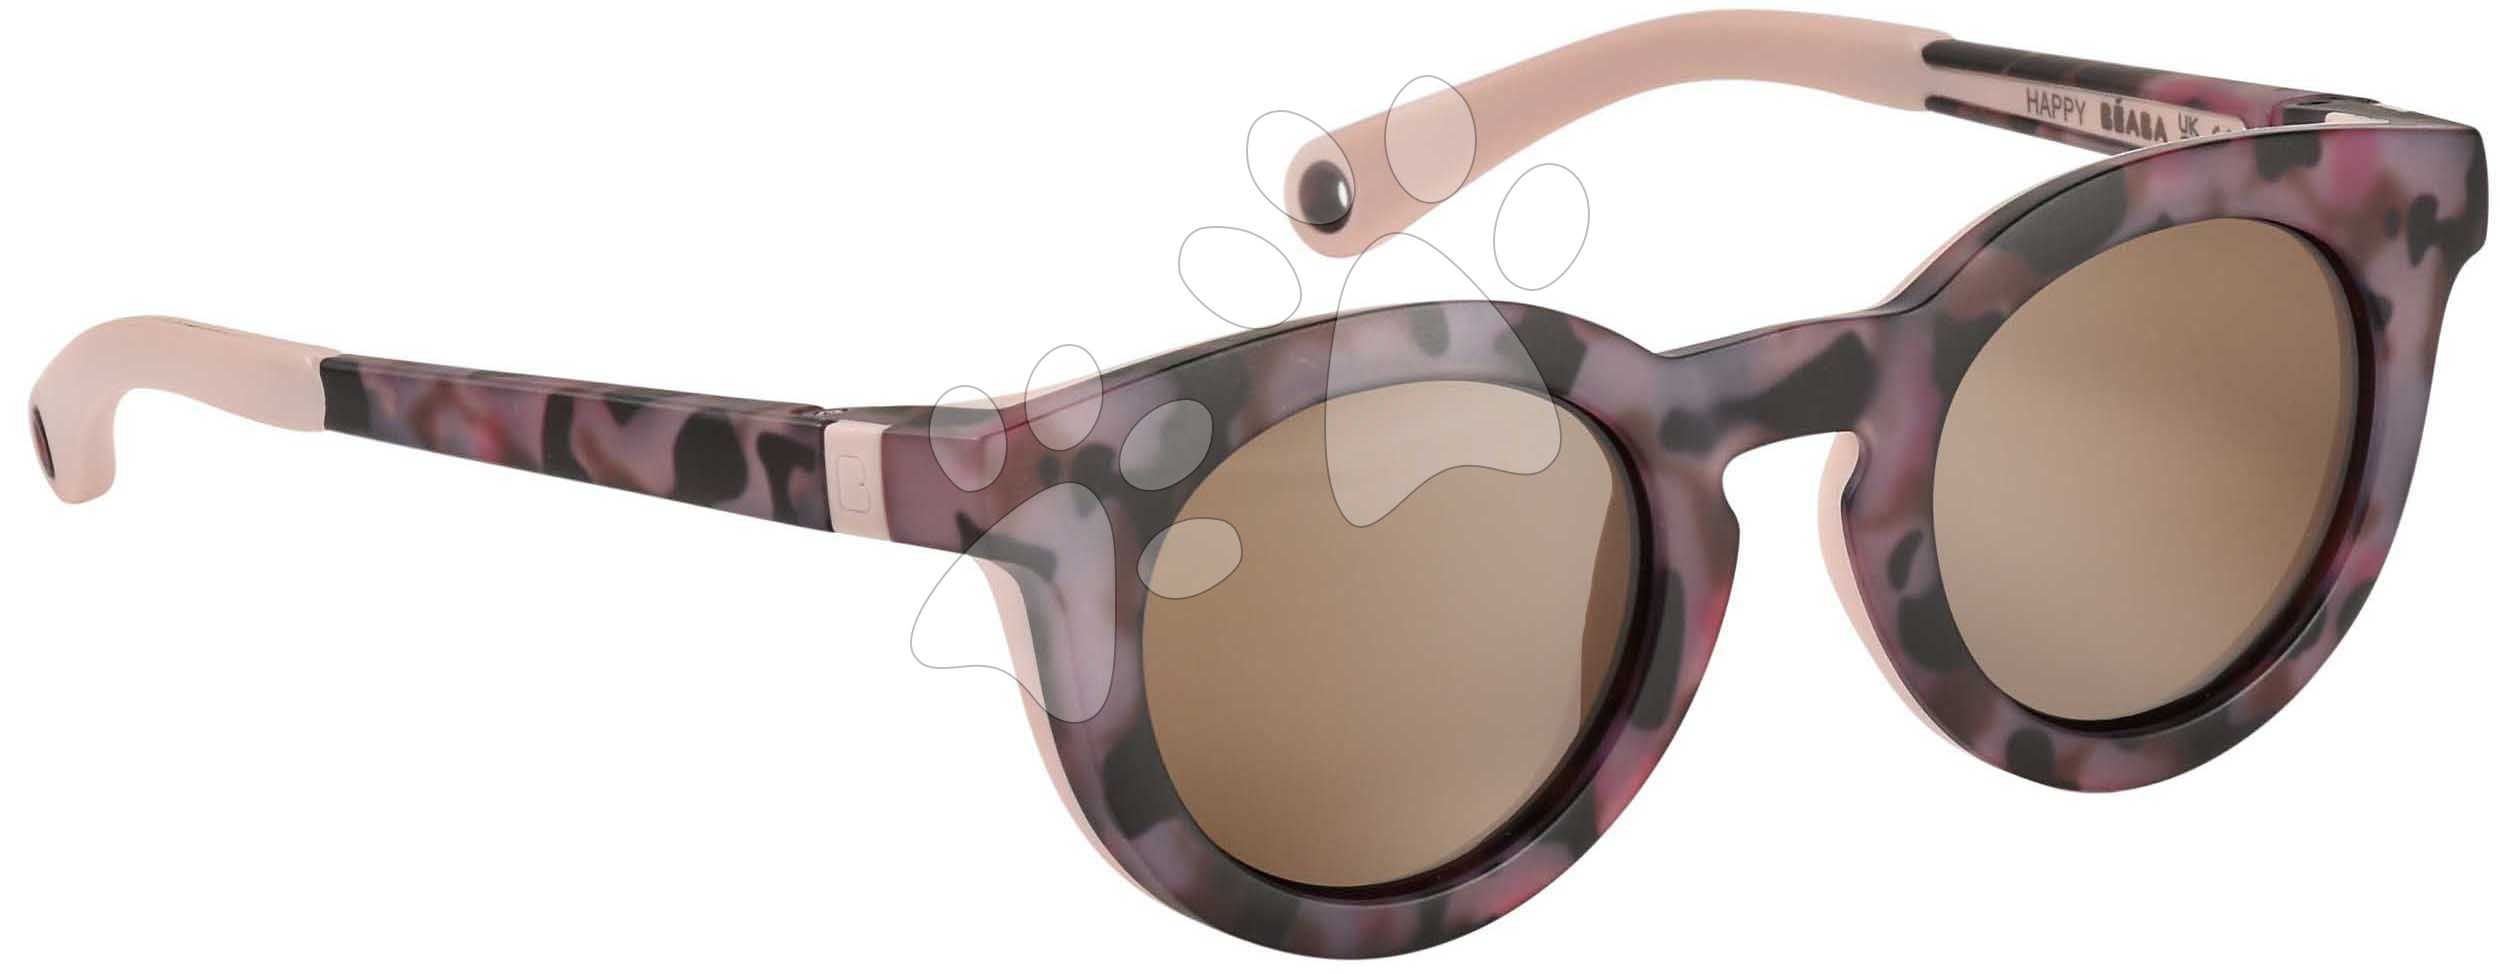 Sluneční brýle pro děti Sunglasses Beaba Happy Pink Tortoise růžové od 2-4 let